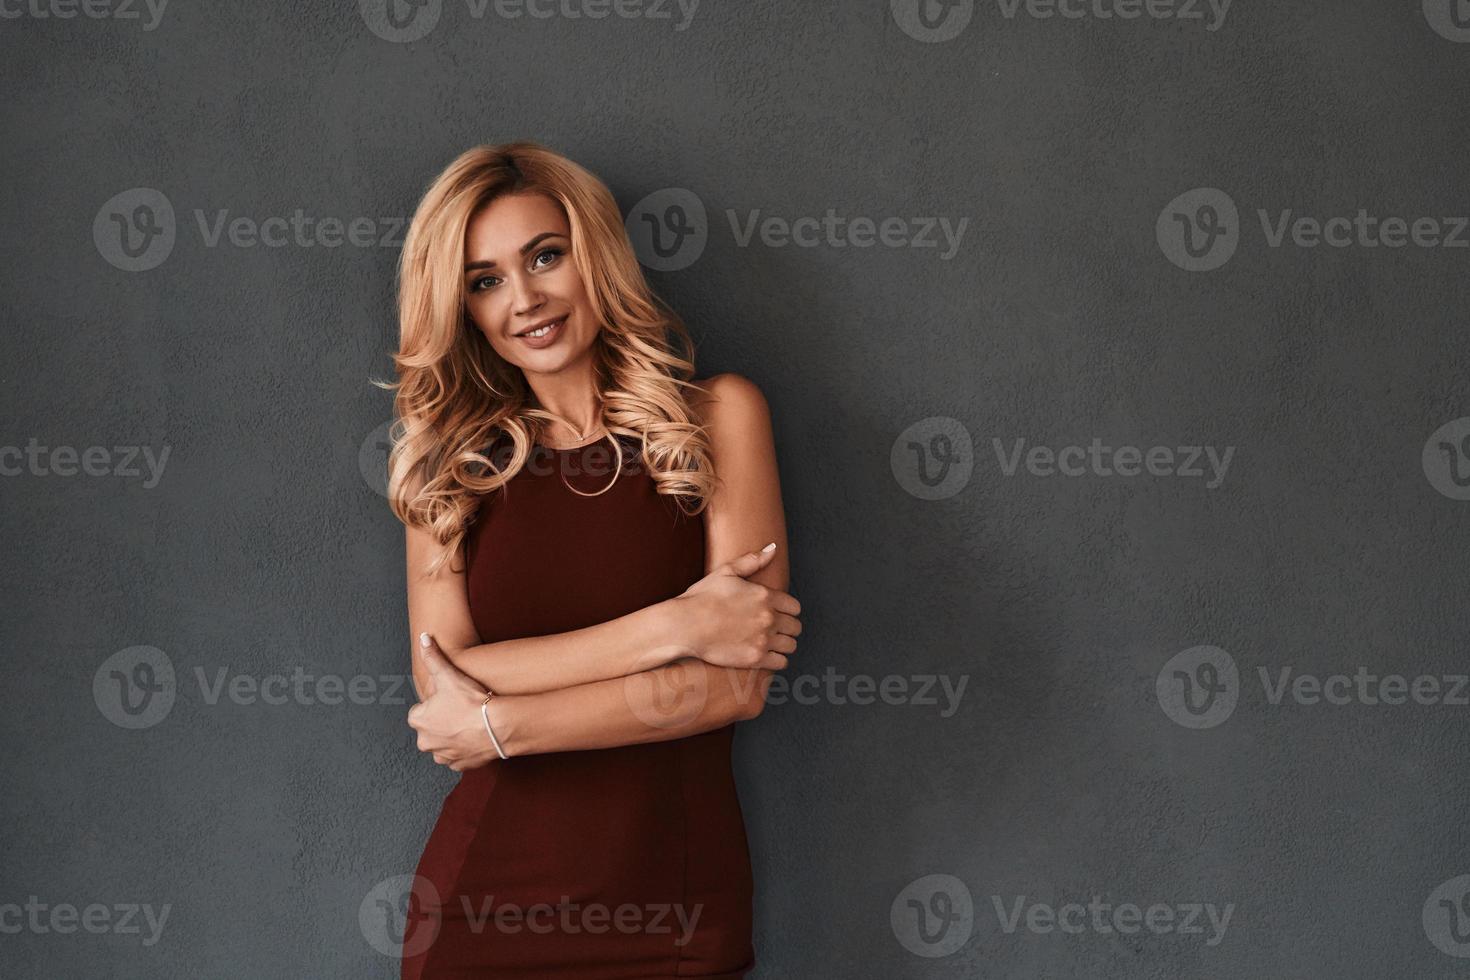 uppriktig leende. attraktiv ung kvinna i klänning förvaring vapen korsade och leende medan stående mot grå bakgrund foto